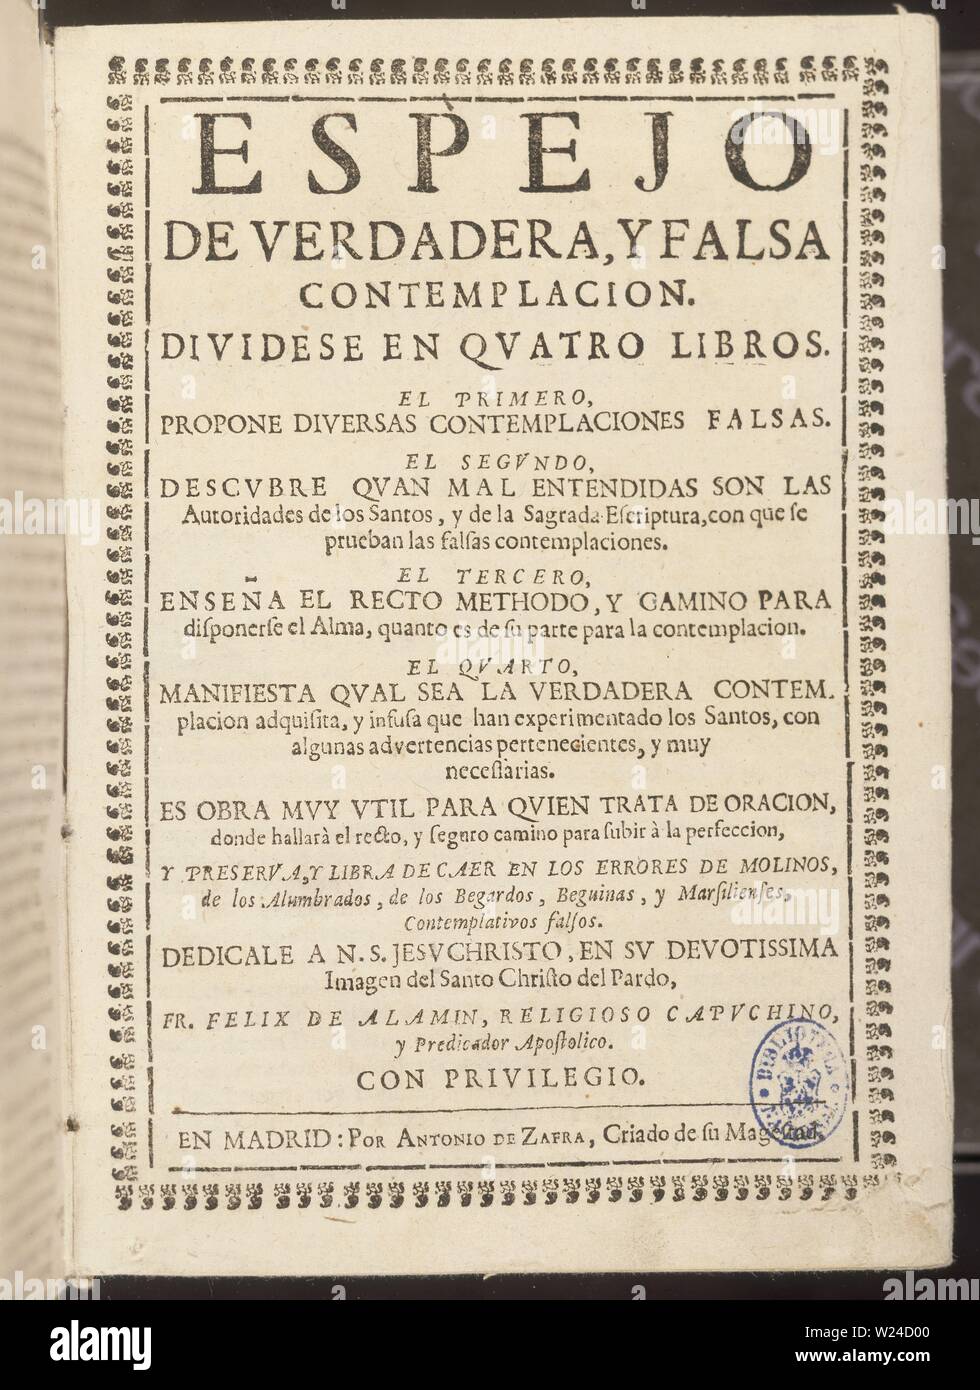 ESPEJO DE VERDADERA Y FALSA CONTEMPLACION-TOMO 1. Author: ALAMIM. Location:  BIBLIOTECA NACIONAL-COLECCION. MADRID. SPAIN Stock Photo - Alamy